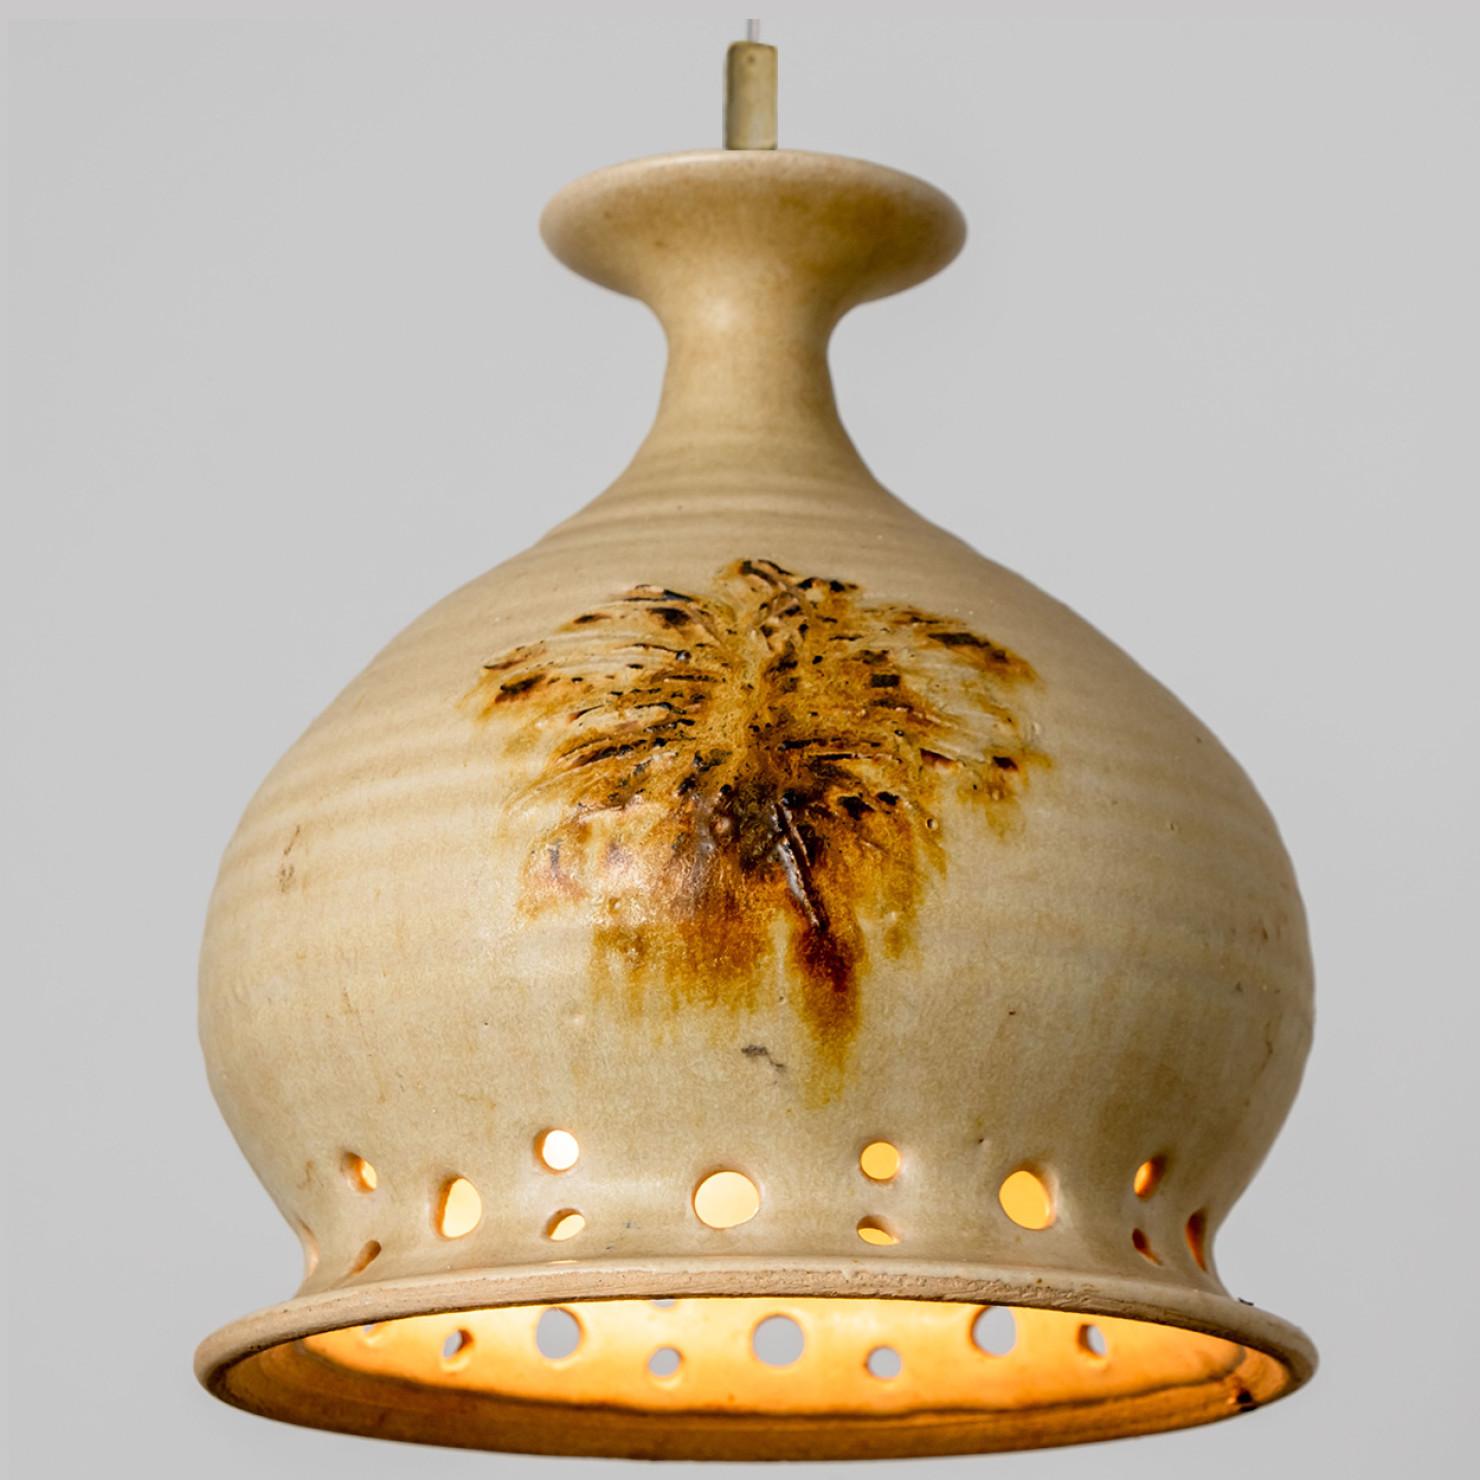 Wunderschöne runde Hängelampe mit einer ungewöhnlichen Form, hergestellt aus reichlich terrafarbener brauner Keramik, hergestellt in den 1970er Jahren in Dänemark. Wir haben auch eine Vielzahl von einzigartigen farbigen Keramik-Licht-Sets und